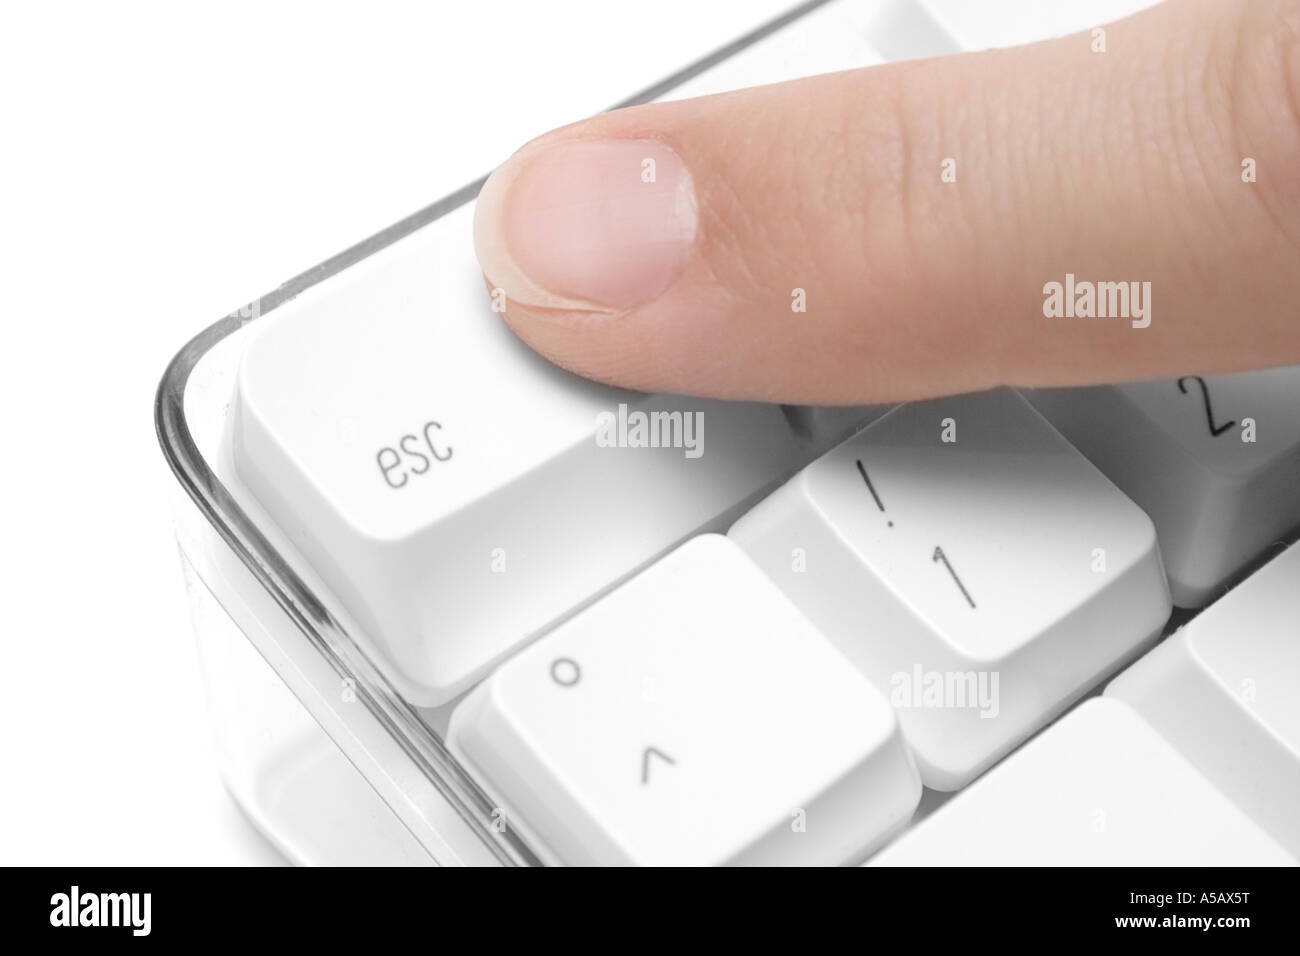 L'index en appuyant sur la touche Esc du clavier d'un livre blanc Photo  Stock - Alamy